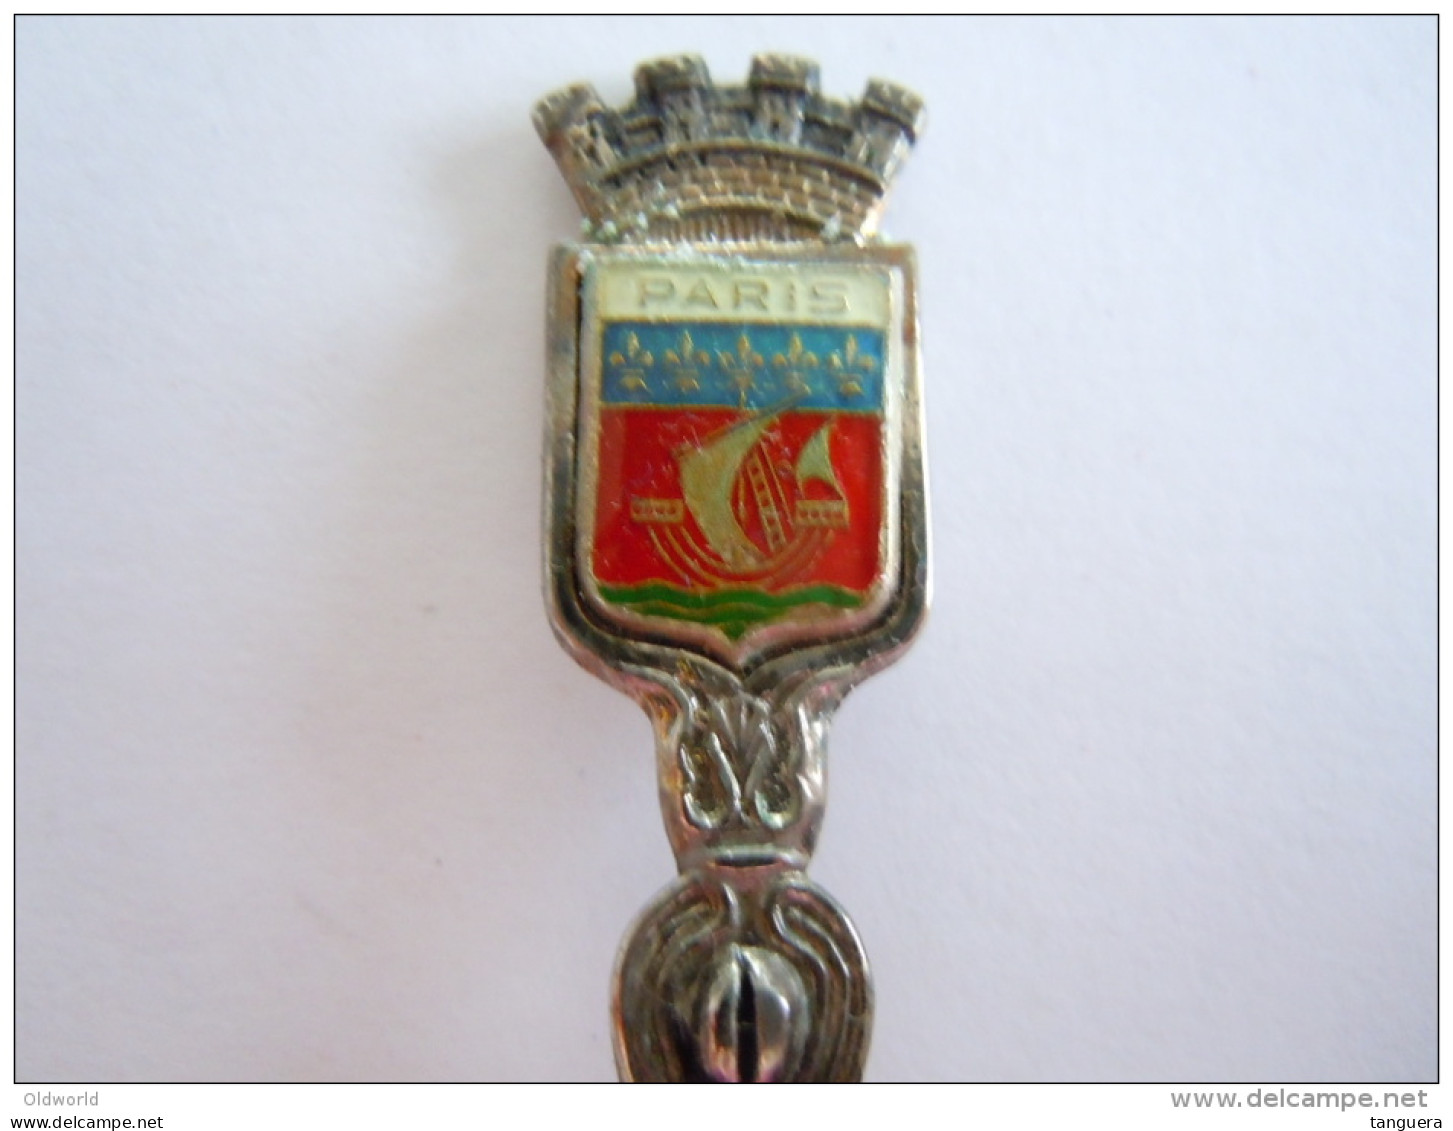 PARIS Vintage Souvenir Armoiries Lepel Petite Cuillère Little Spoon Argenté Plated (ref 7) - Cucharas